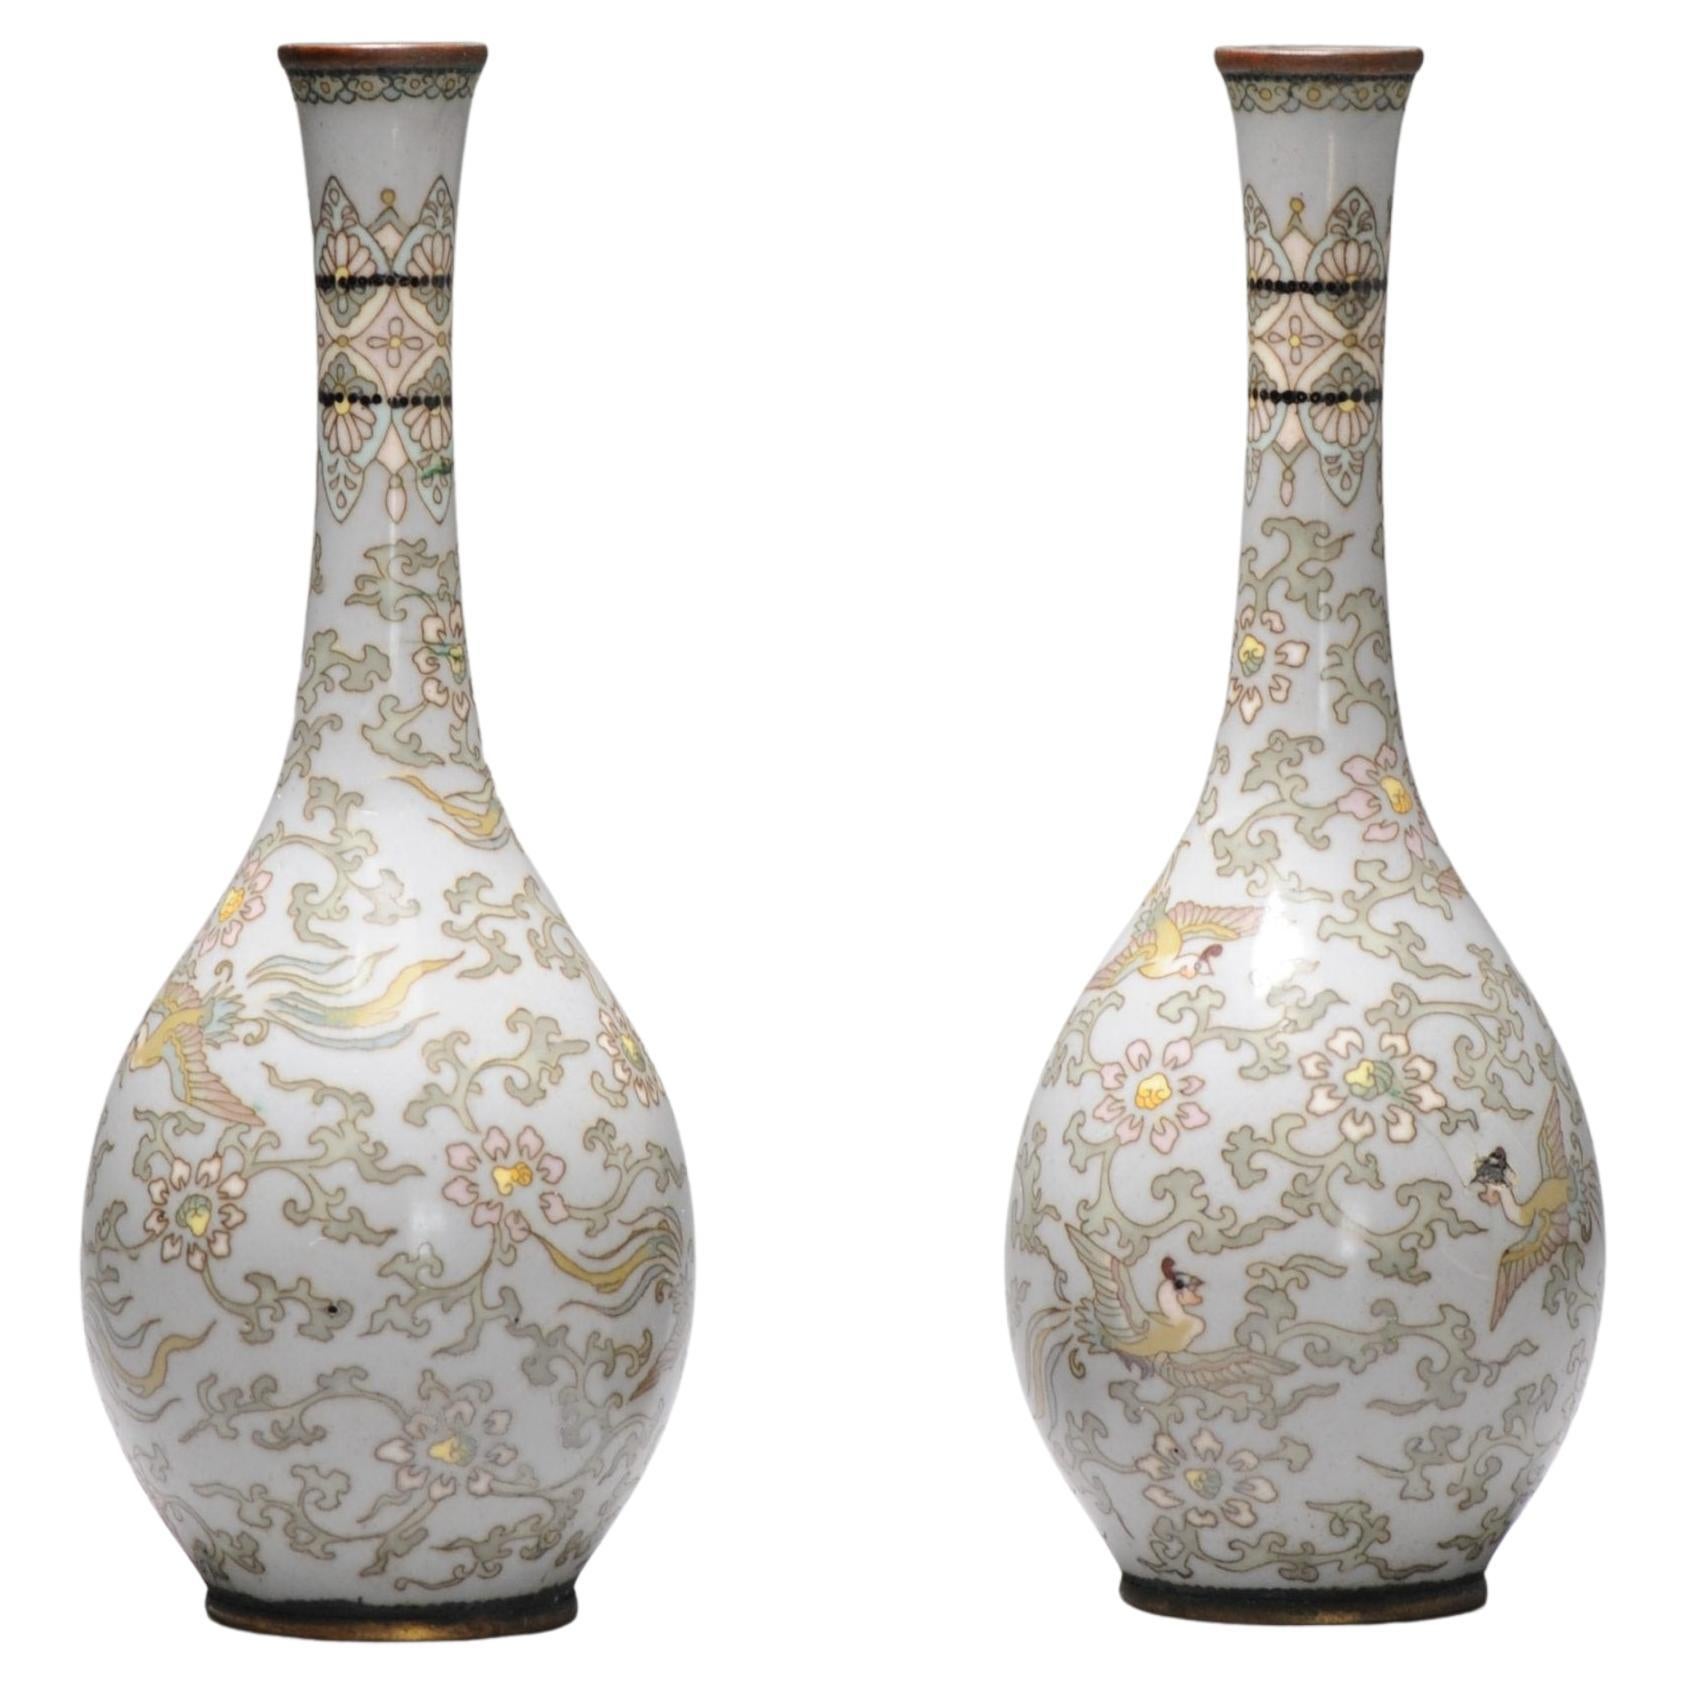 Pair Antique Bronze Vase Cloisonné Japan Meiji 19th Century Japanese